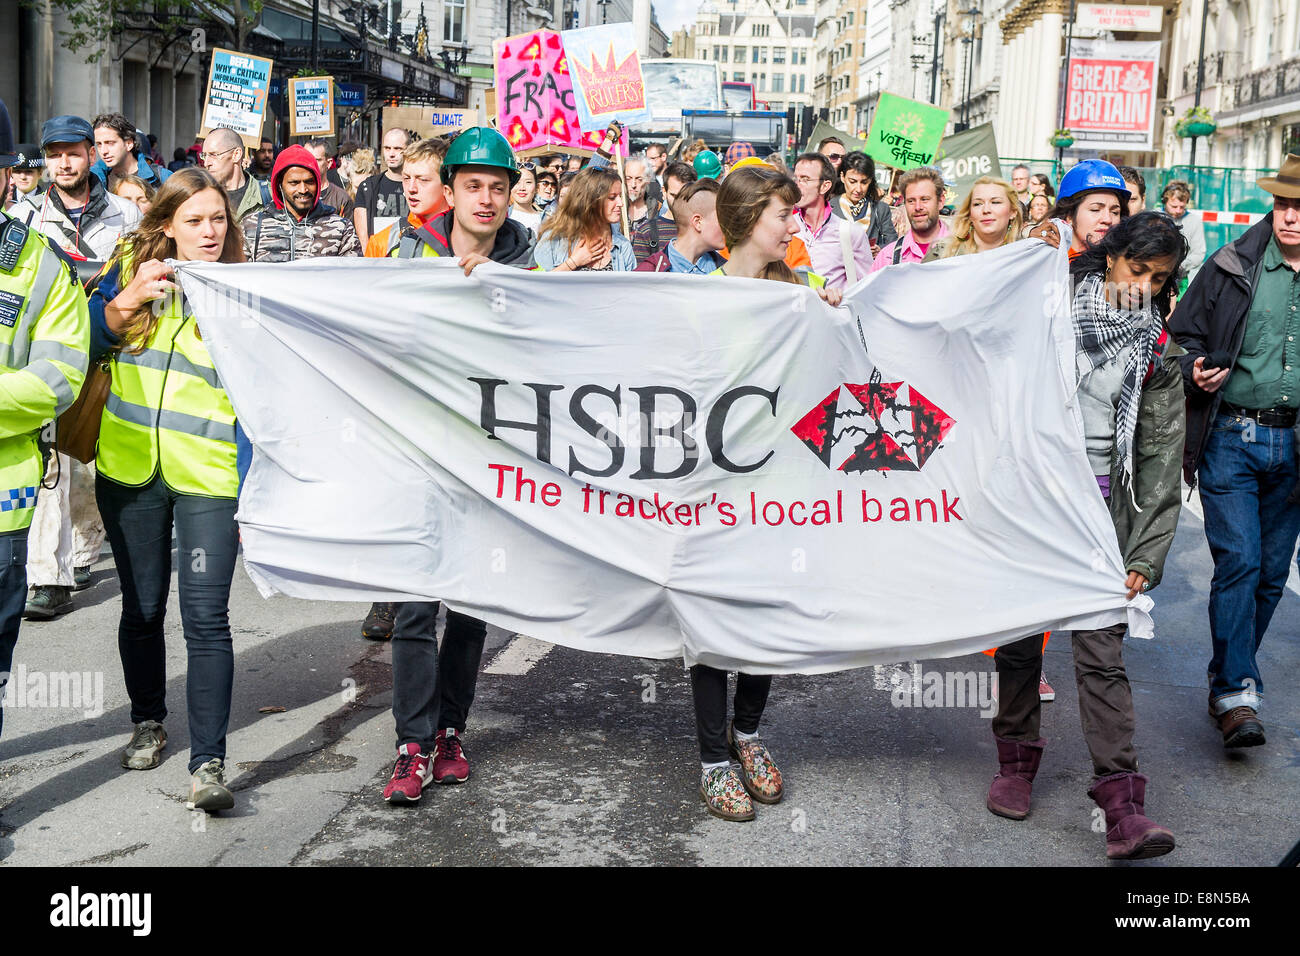 Londres, Royaume-Uni. Oct 11, 2014. Cible des manifestants Anti-Fracking HSBC dans la journée mondiale d'action. Simulation d'appareil de forage, de l'eau', 'fracturée de bandes de danger et des haut-parleurs des collectivités touchées tourner deux HSBCs le centre de Londres sont transformés en 'live' dans les sites de fracturation protester au sujet du financement accordé aux activités de fracturation. "Global Frackdown" jour d'action voit 100s d'actions contre la fracturation dans plus de 30 pays. Regent Street, Londres. Crédit : Guy Bell/Alamy Live News Banque D'Images